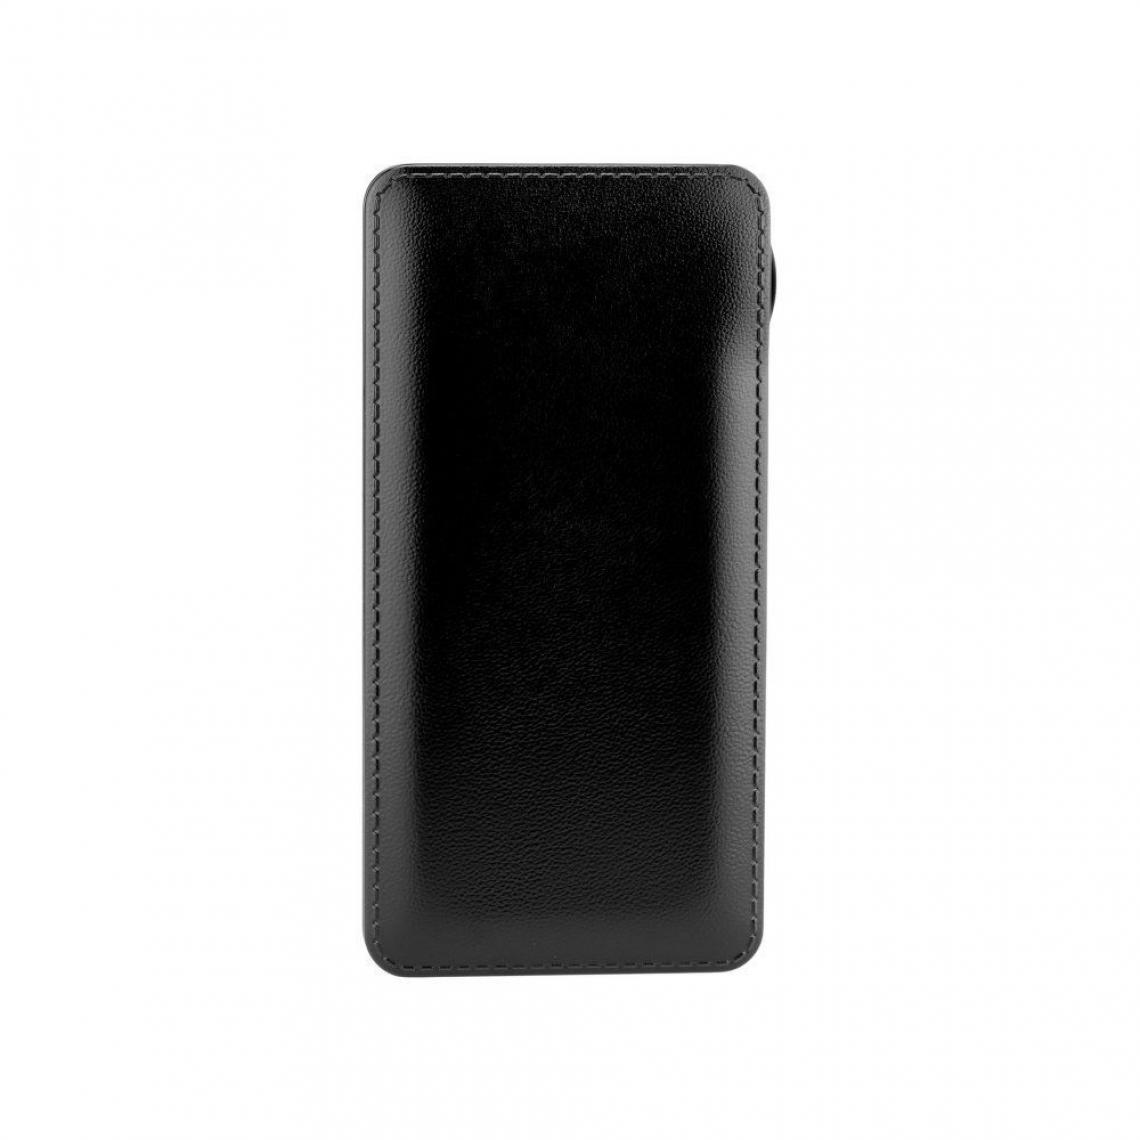 Ozzzo - Chargeur batterie externe 20000 mAh powerbank ozzzo noir pour Nokia 1.3 2020 - Autres accessoires smartphone